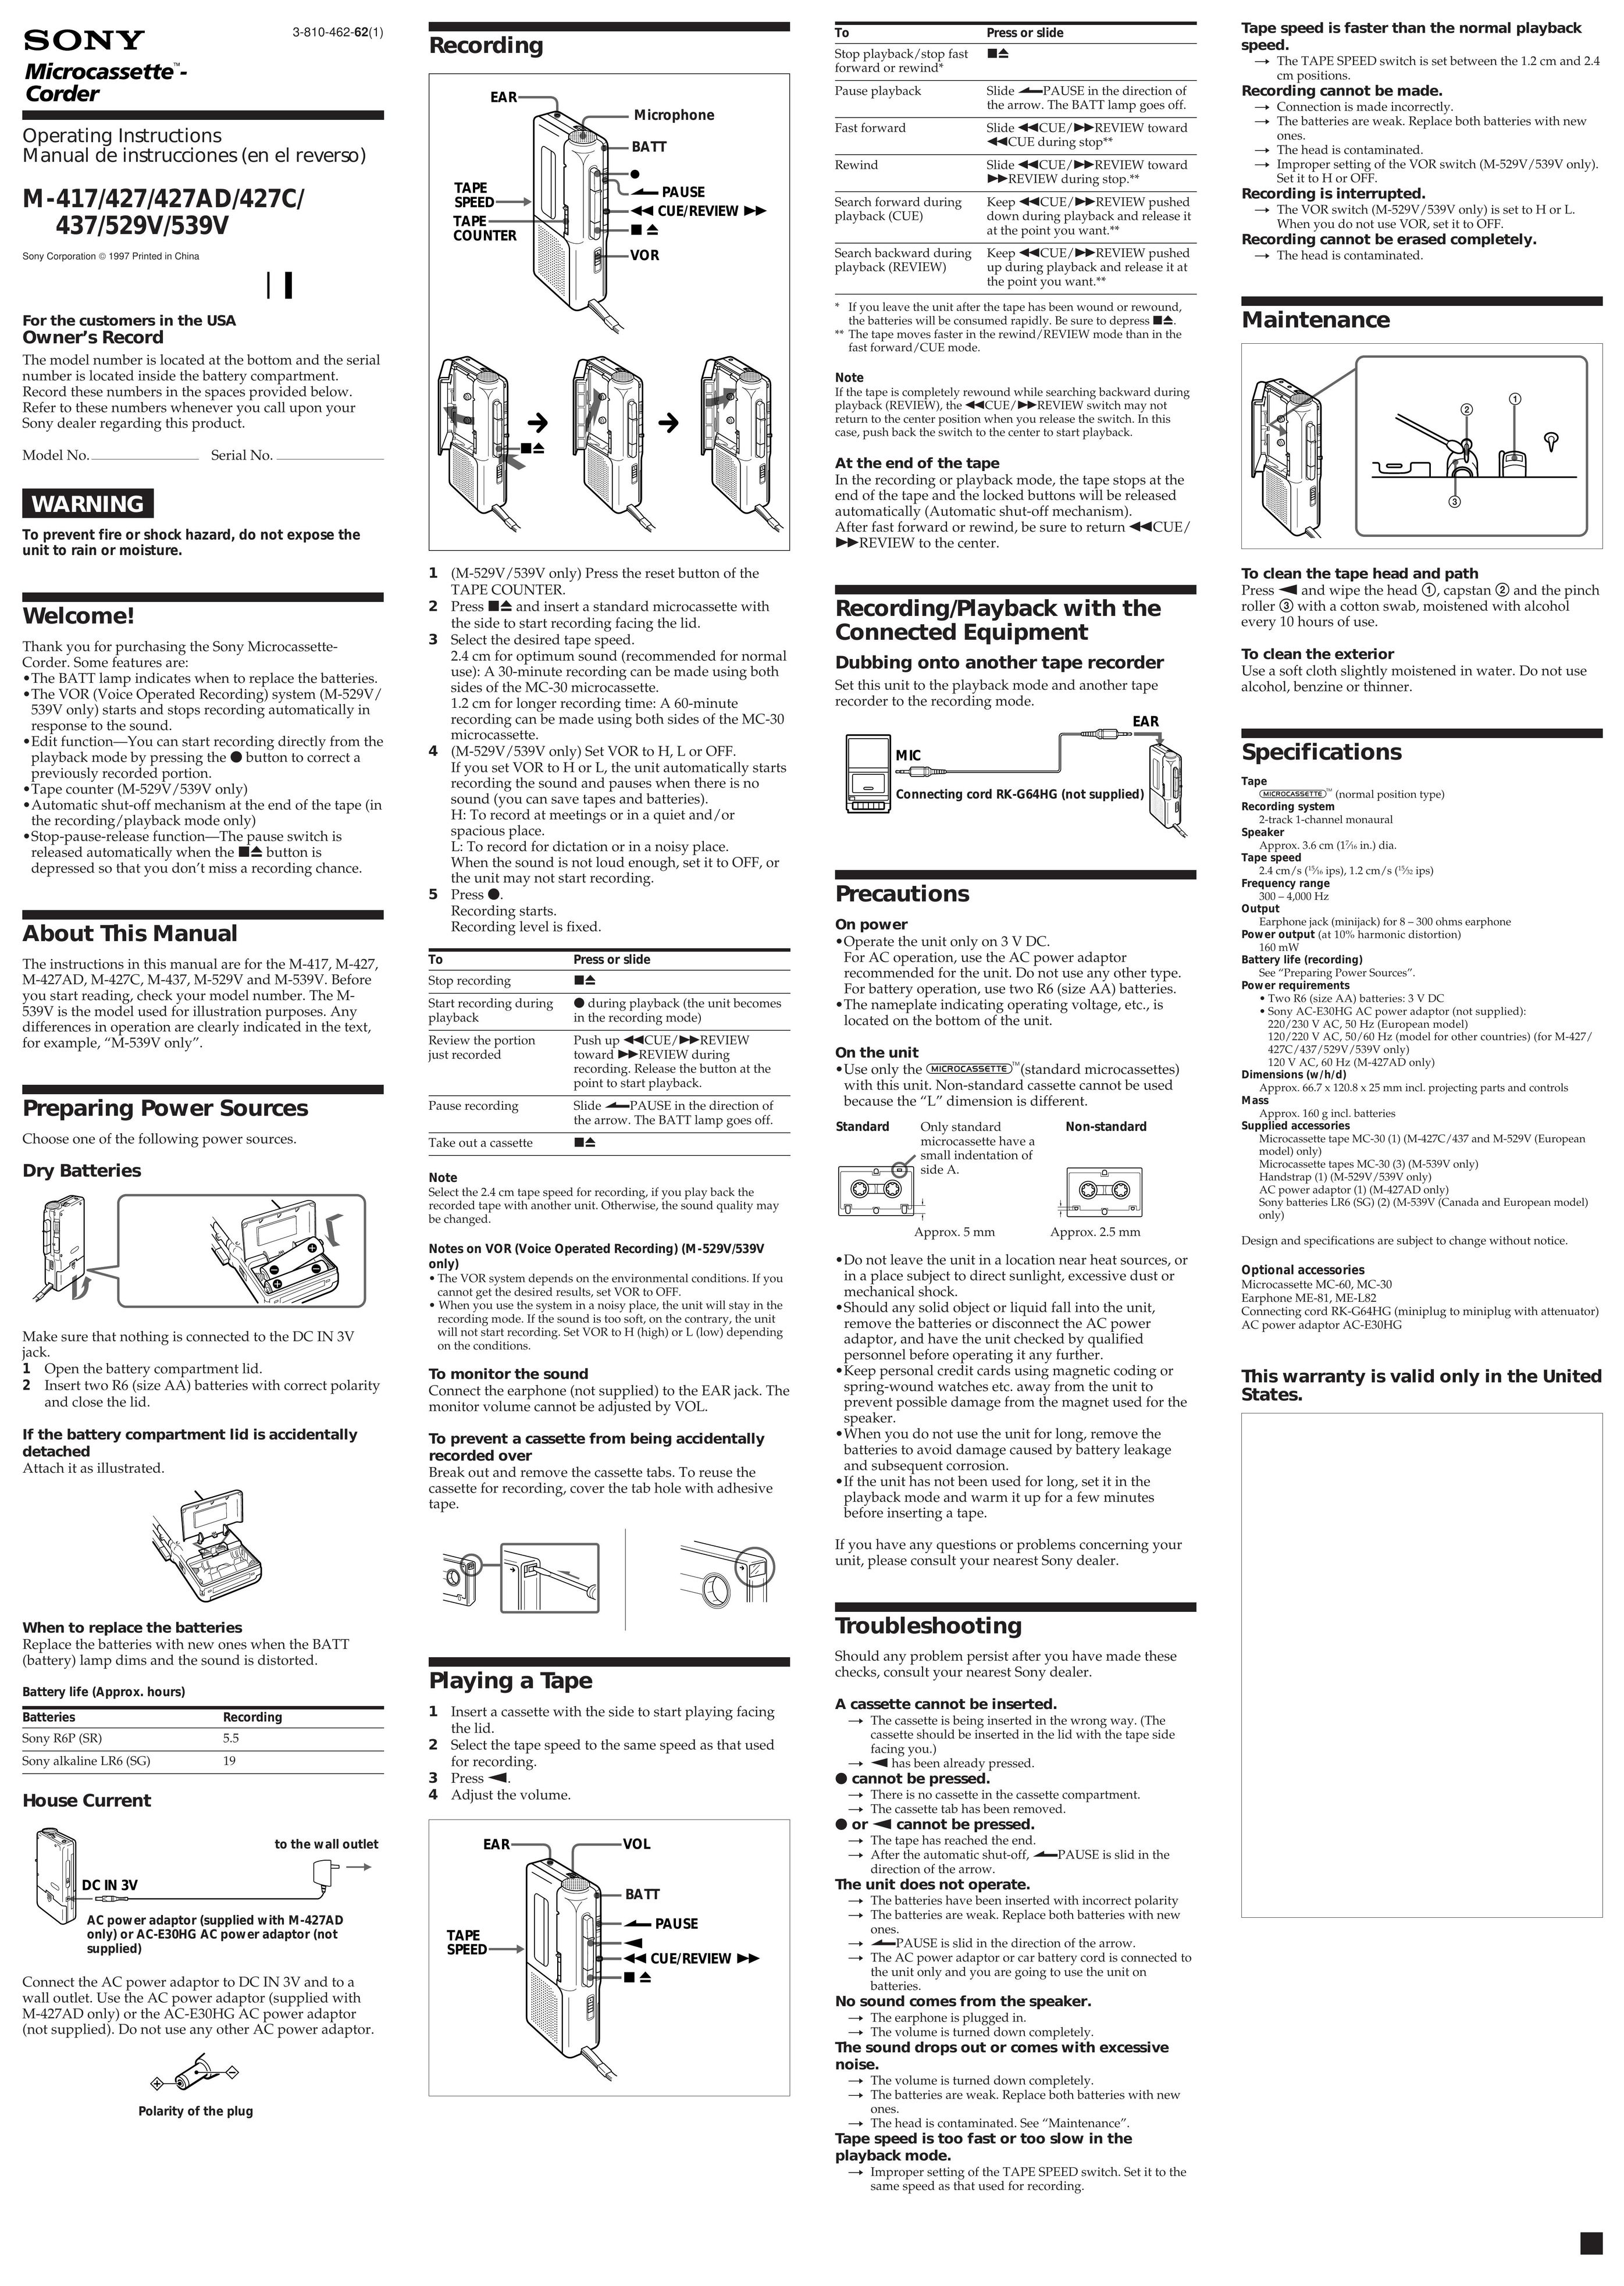 Sony 539V Microcassette Recorder User Manual